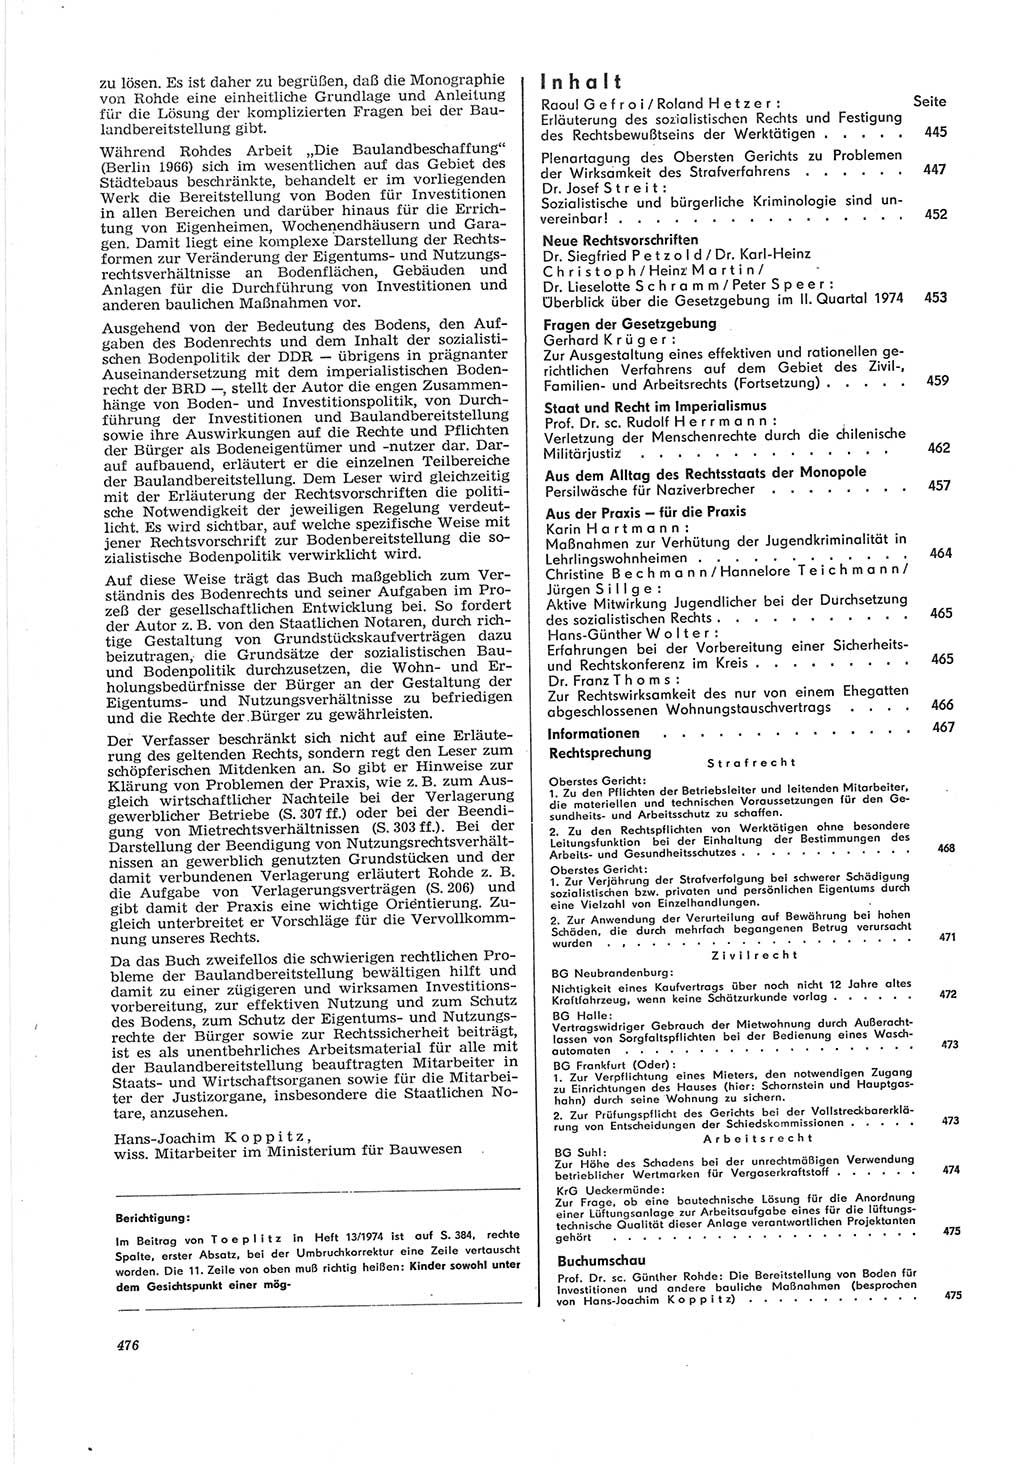 Neue Justiz (NJ), Zeitschrift für Recht und Rechtswissenschaft [Deutsche Demokratische Republik (DDR)], 28. Jahrgang 1974, Seite 476 (NJ DDR 1974, S. 476)